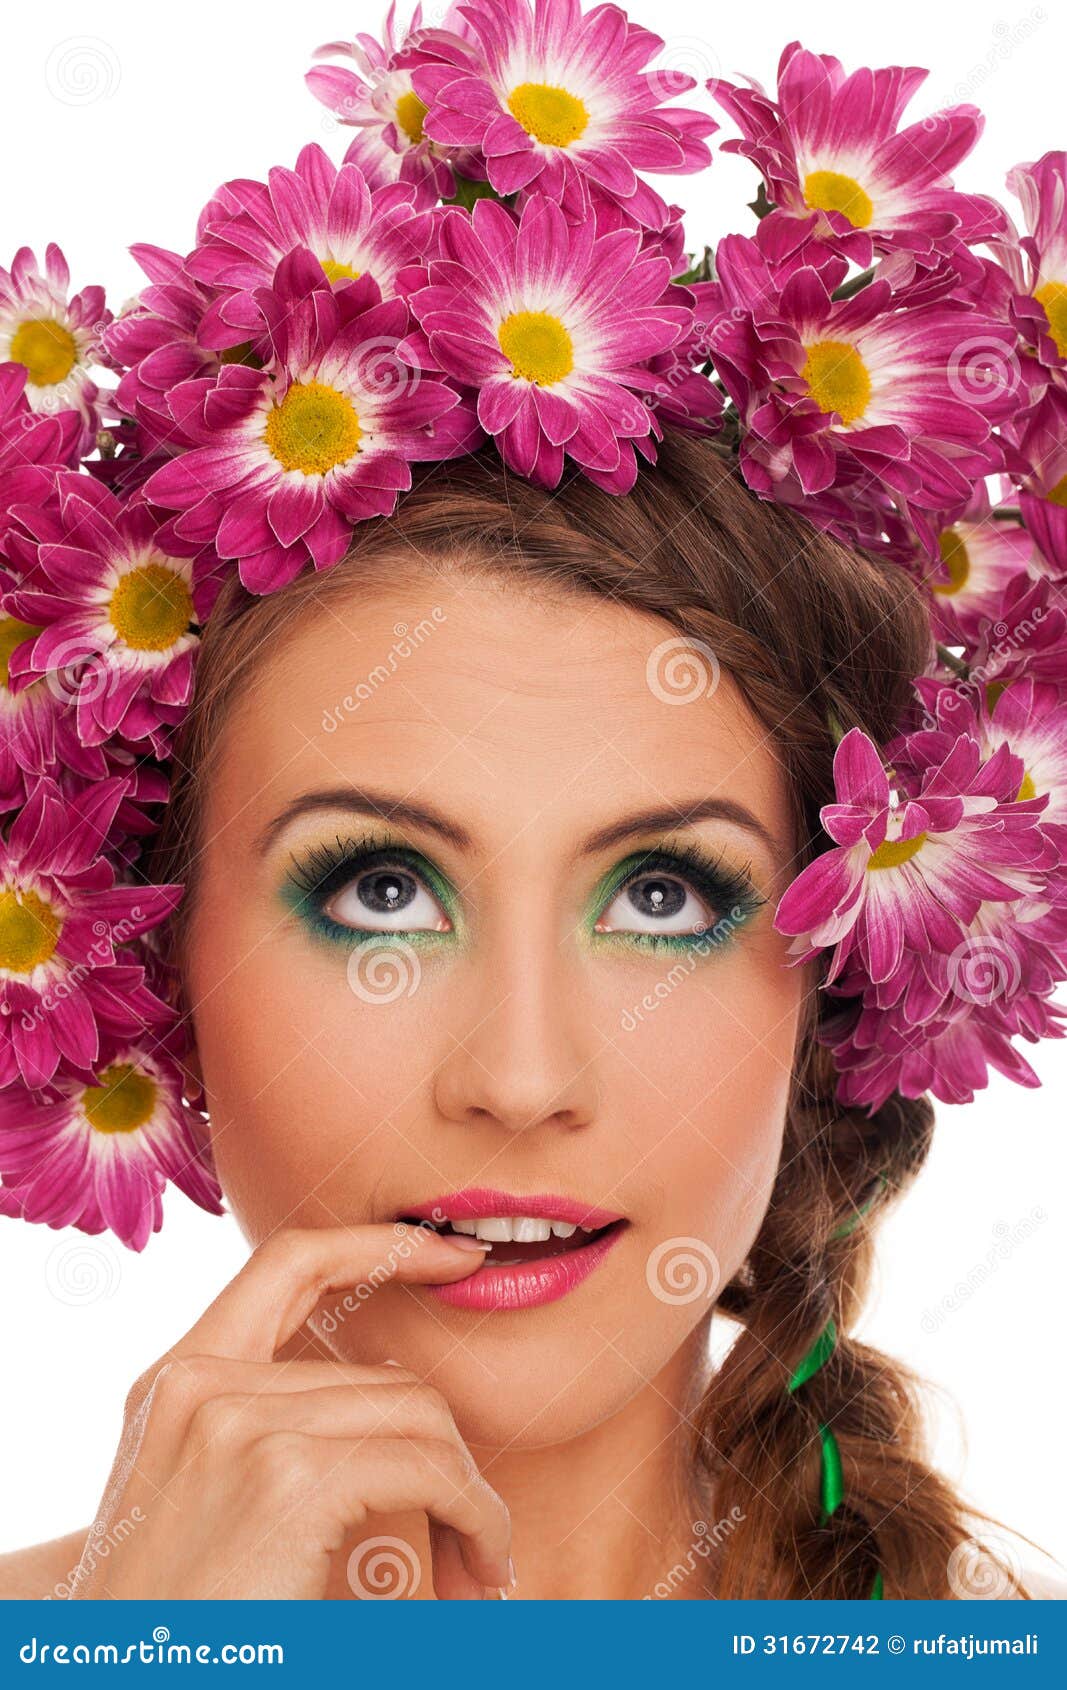 mulher-bonita-nova-com-as-flores-no-cabelo-31672742.jpg